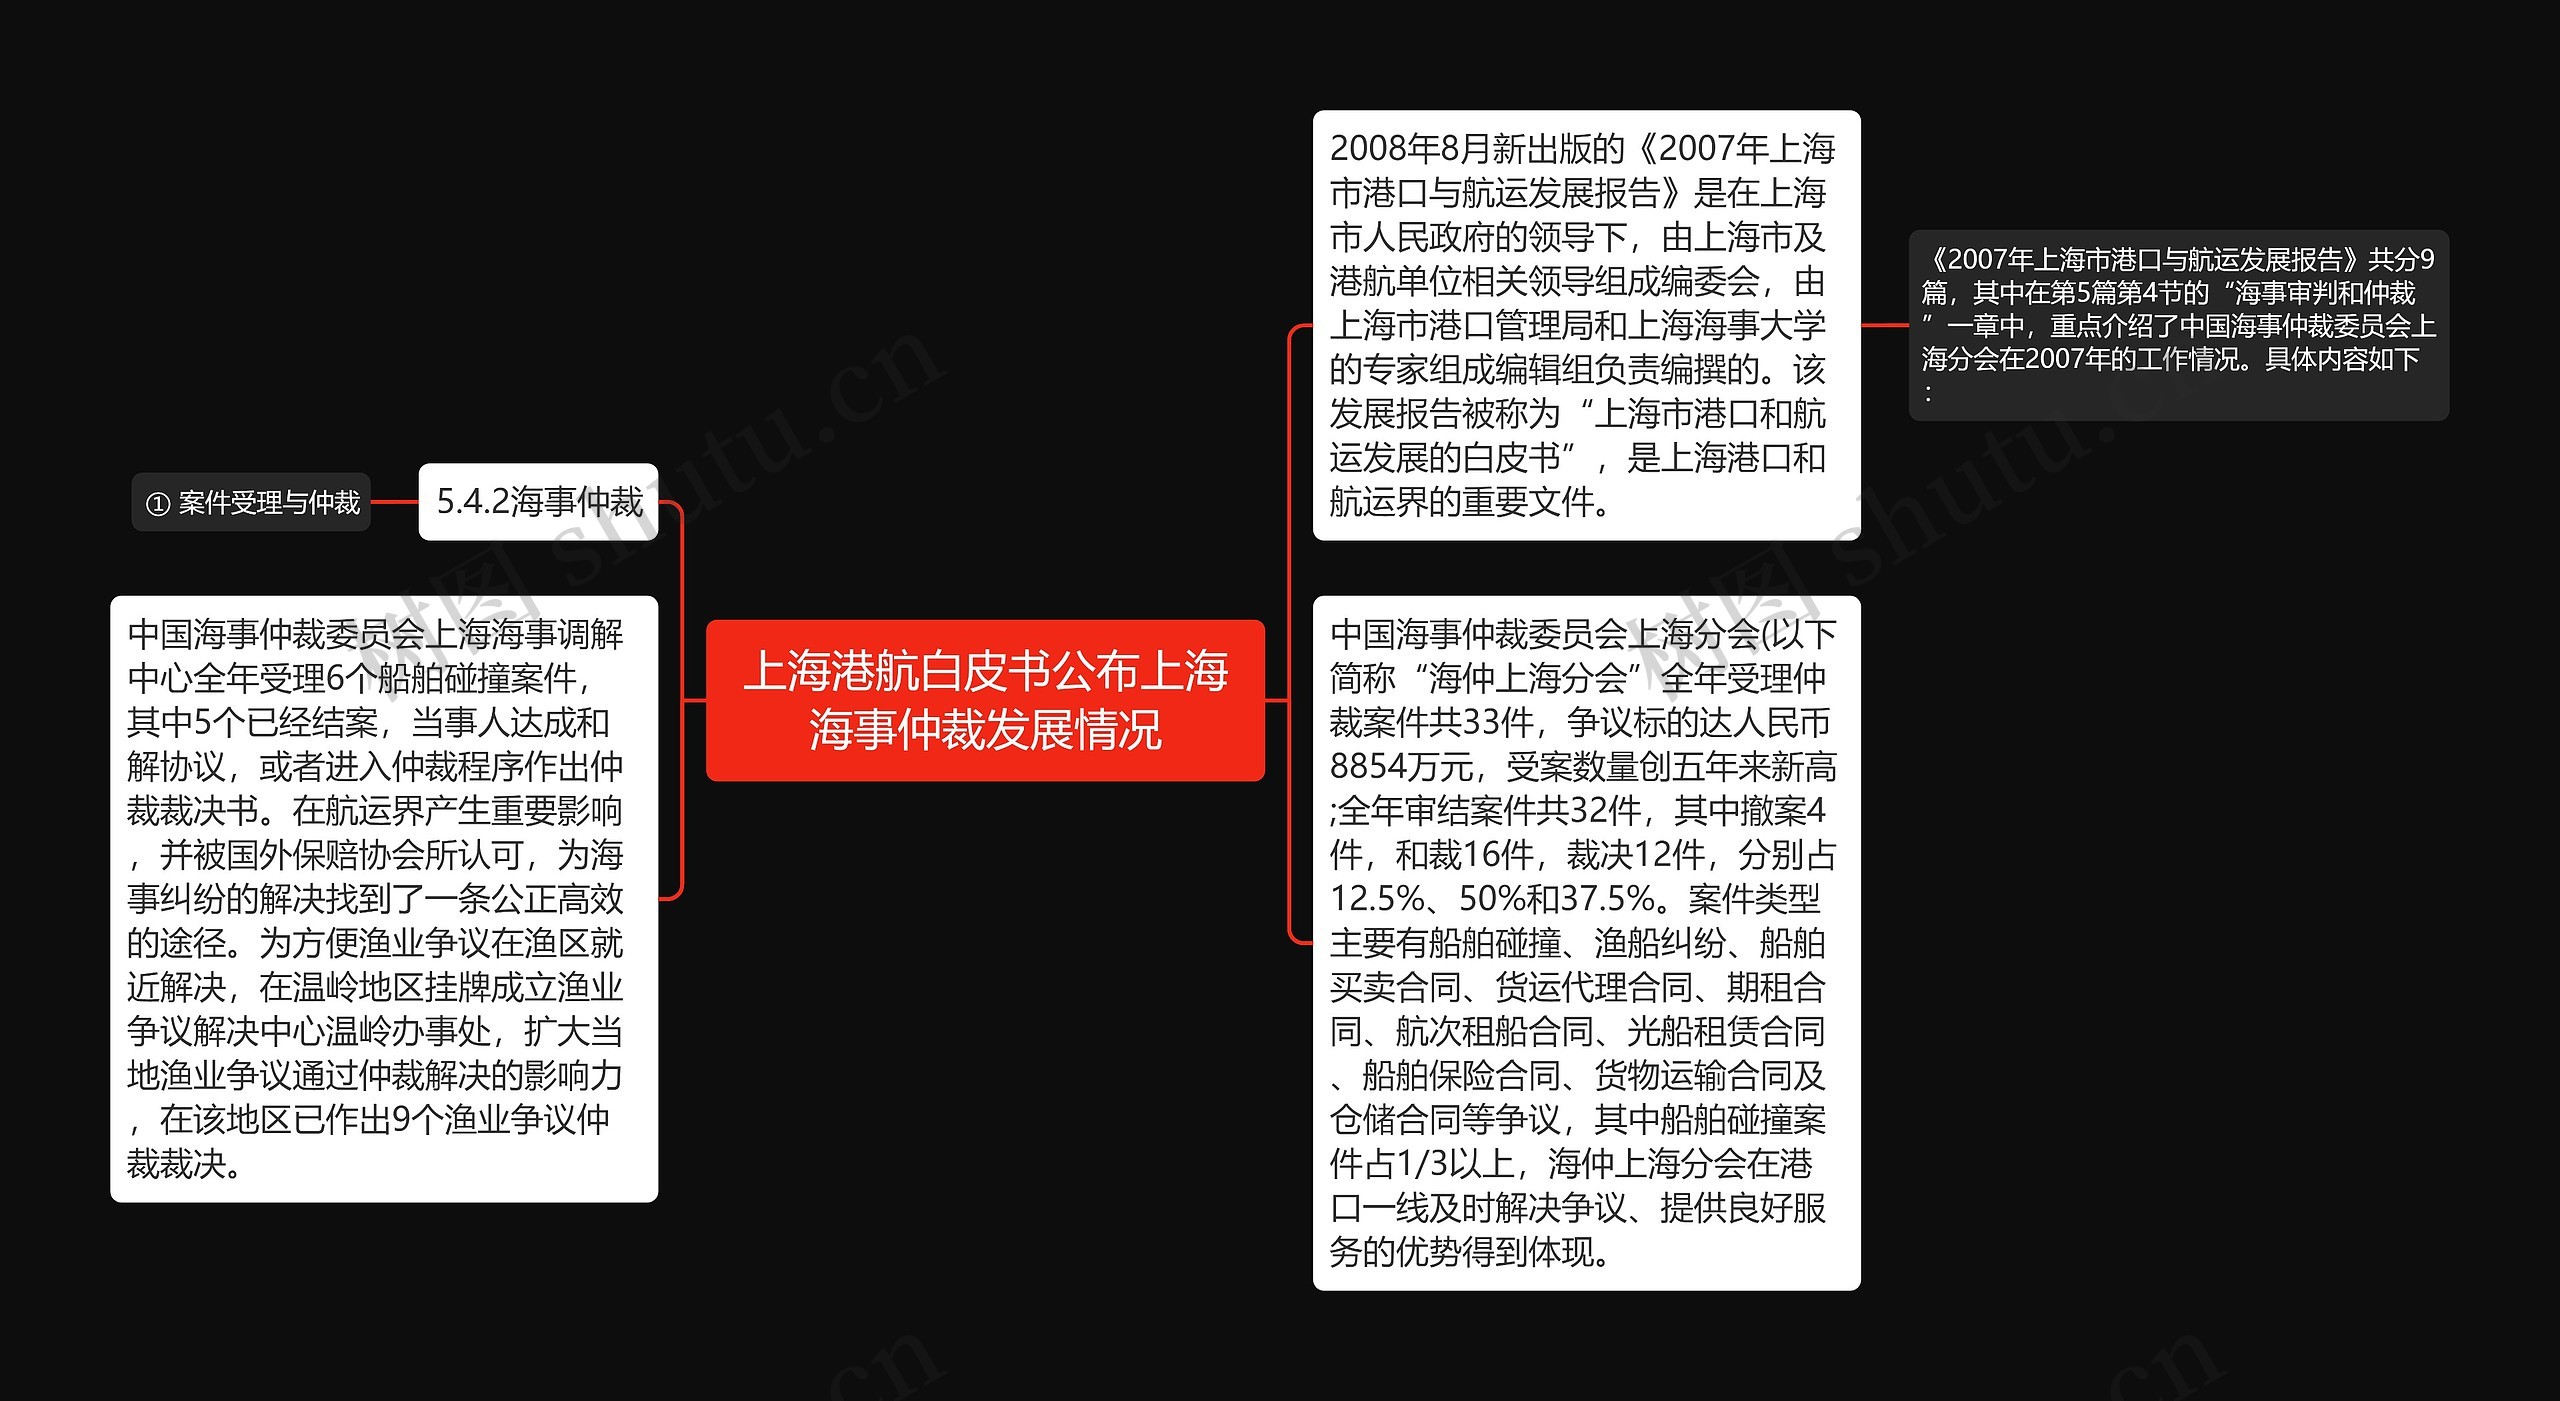 上海港航白皮书公布上海海事仲裁发展情况思维导图